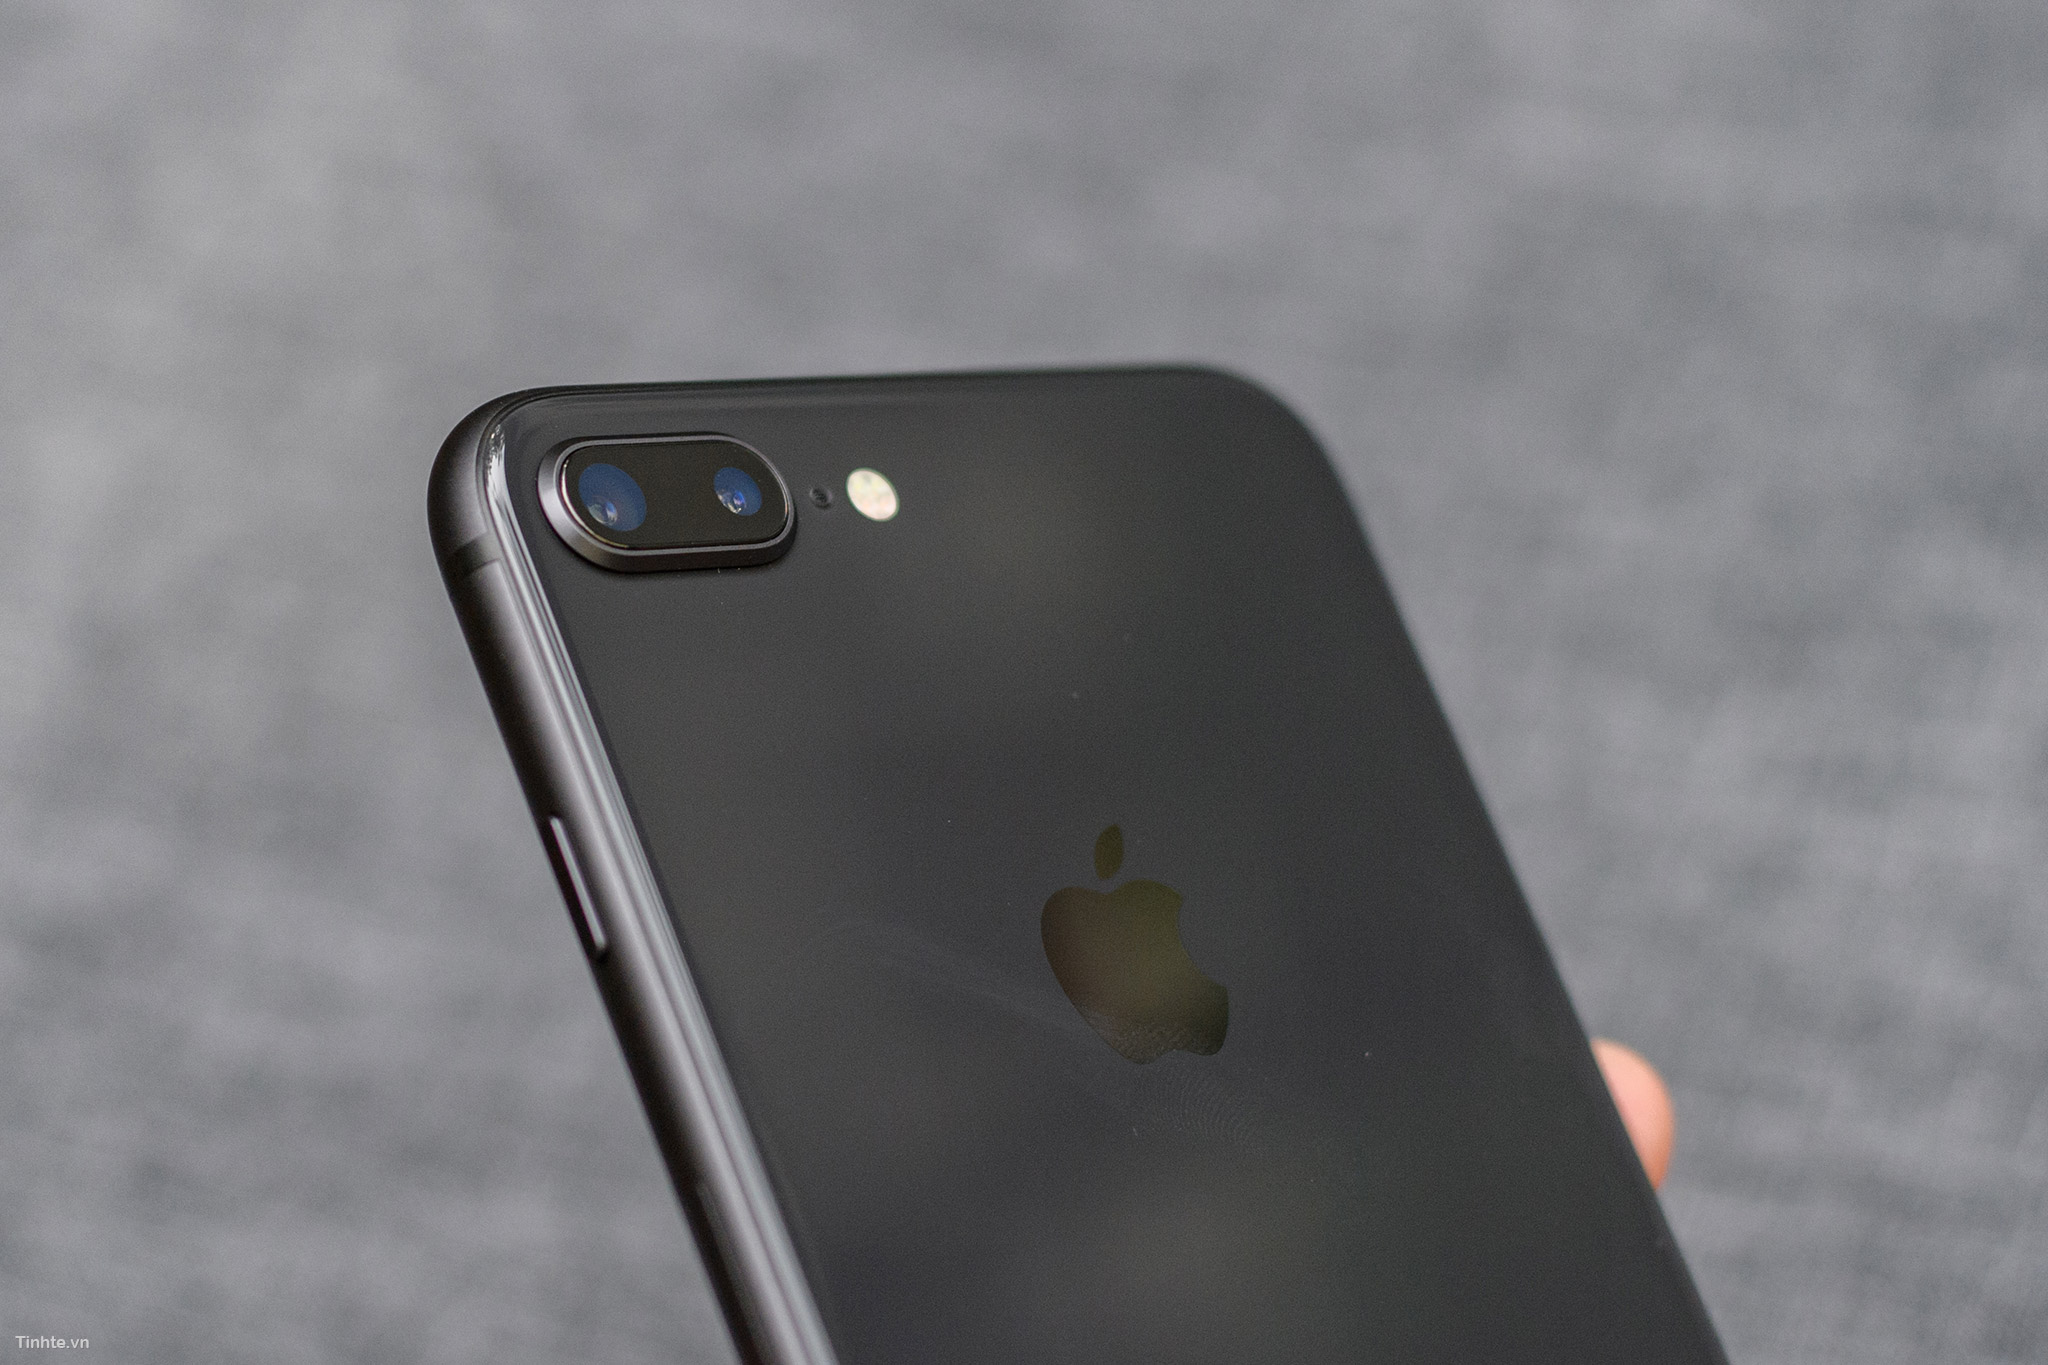 iPhone 8/8 Plus màu Space Gray là sự lựa chọn đúng đắn cho những ai yêu thích màu sắc đơn giản, không quá rực rỡ. Hãy xem hình ảnh iPhone 8 màu đen để khám phá vẻ đẹp đậm chất tối giản của chiếc điện thoại này.